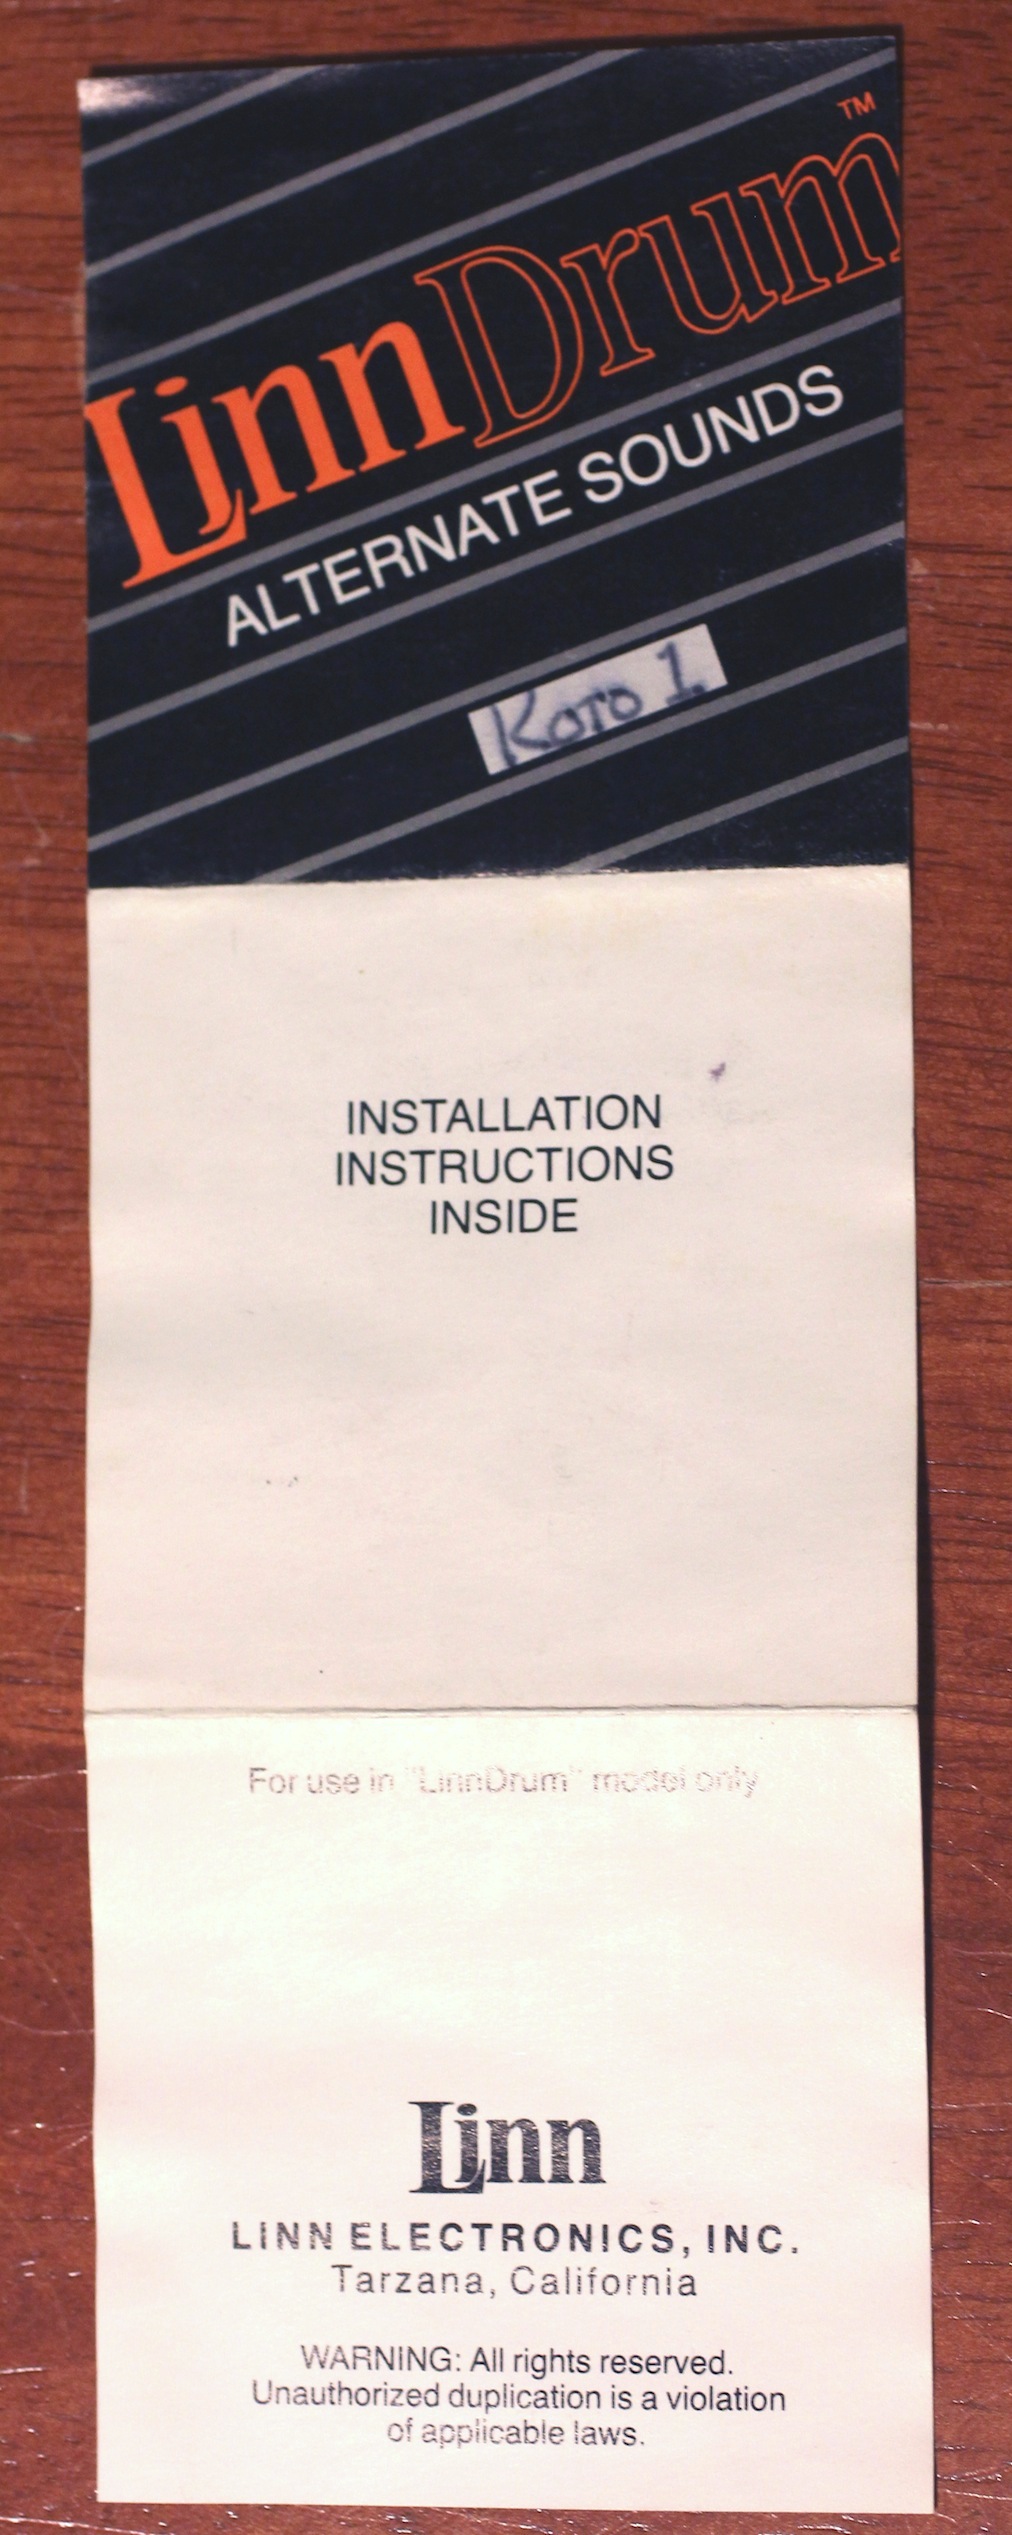 19-chip-installation-instructions-01-img_4480.jpg